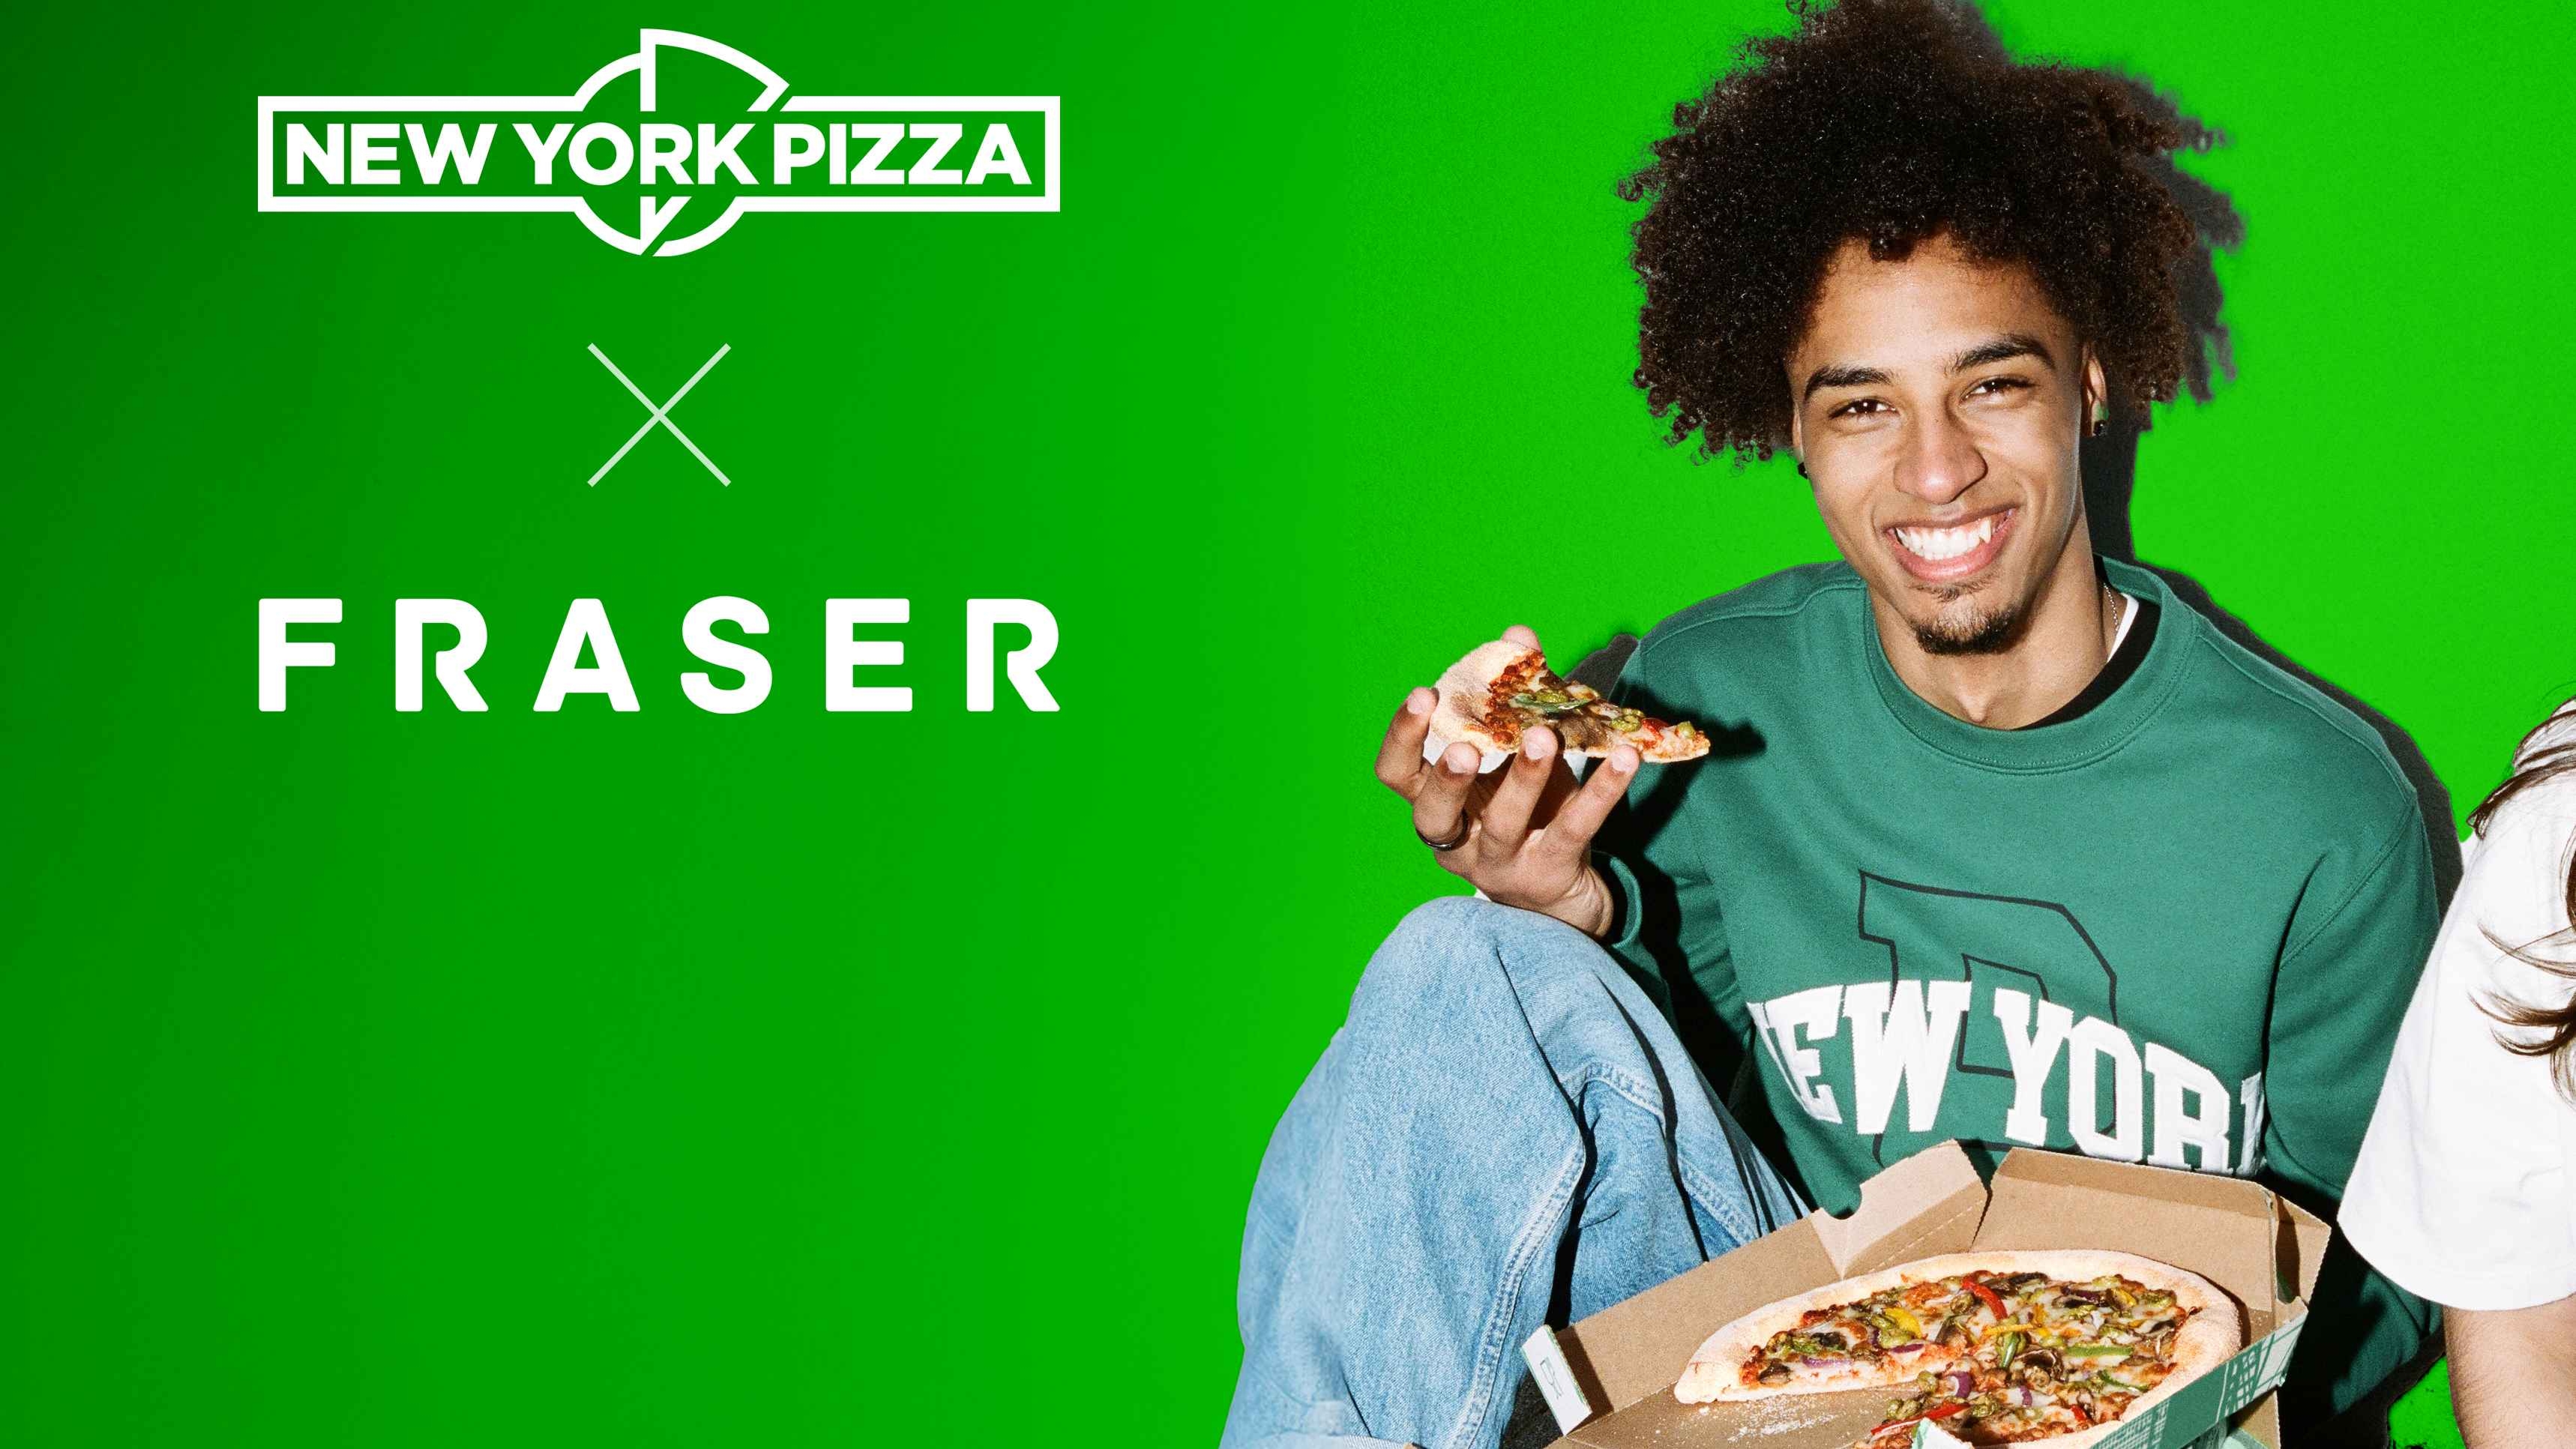 New York Pizza geht mit neuem Agenturpartner Fraser in die Offensive